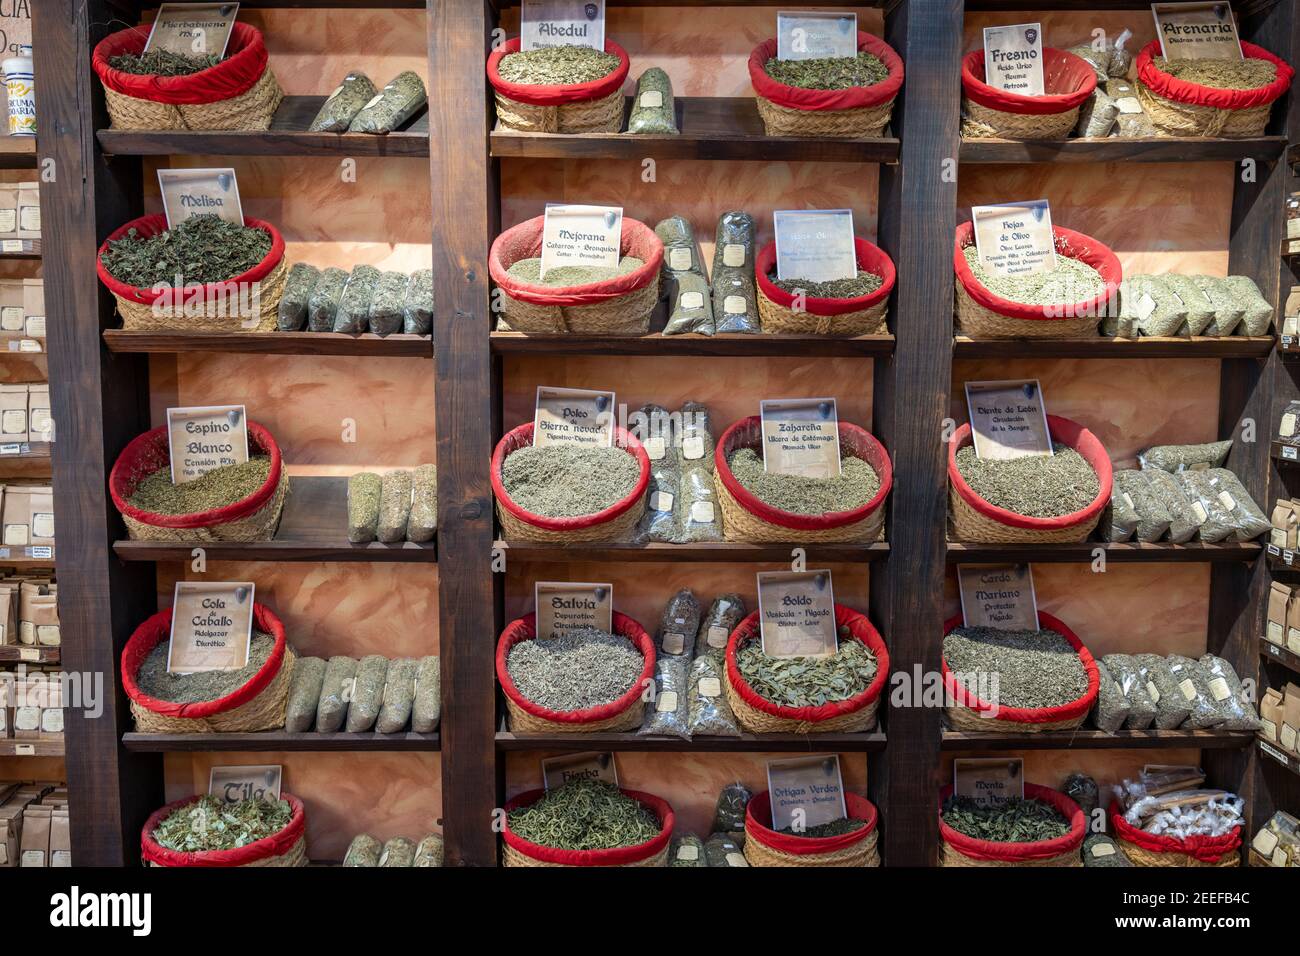 Granada, Spagna - 4 febbraio 2021: Vista interna di un negozio di tè con erbe e spezie e molti tipi di tè in cestini Foto Stock